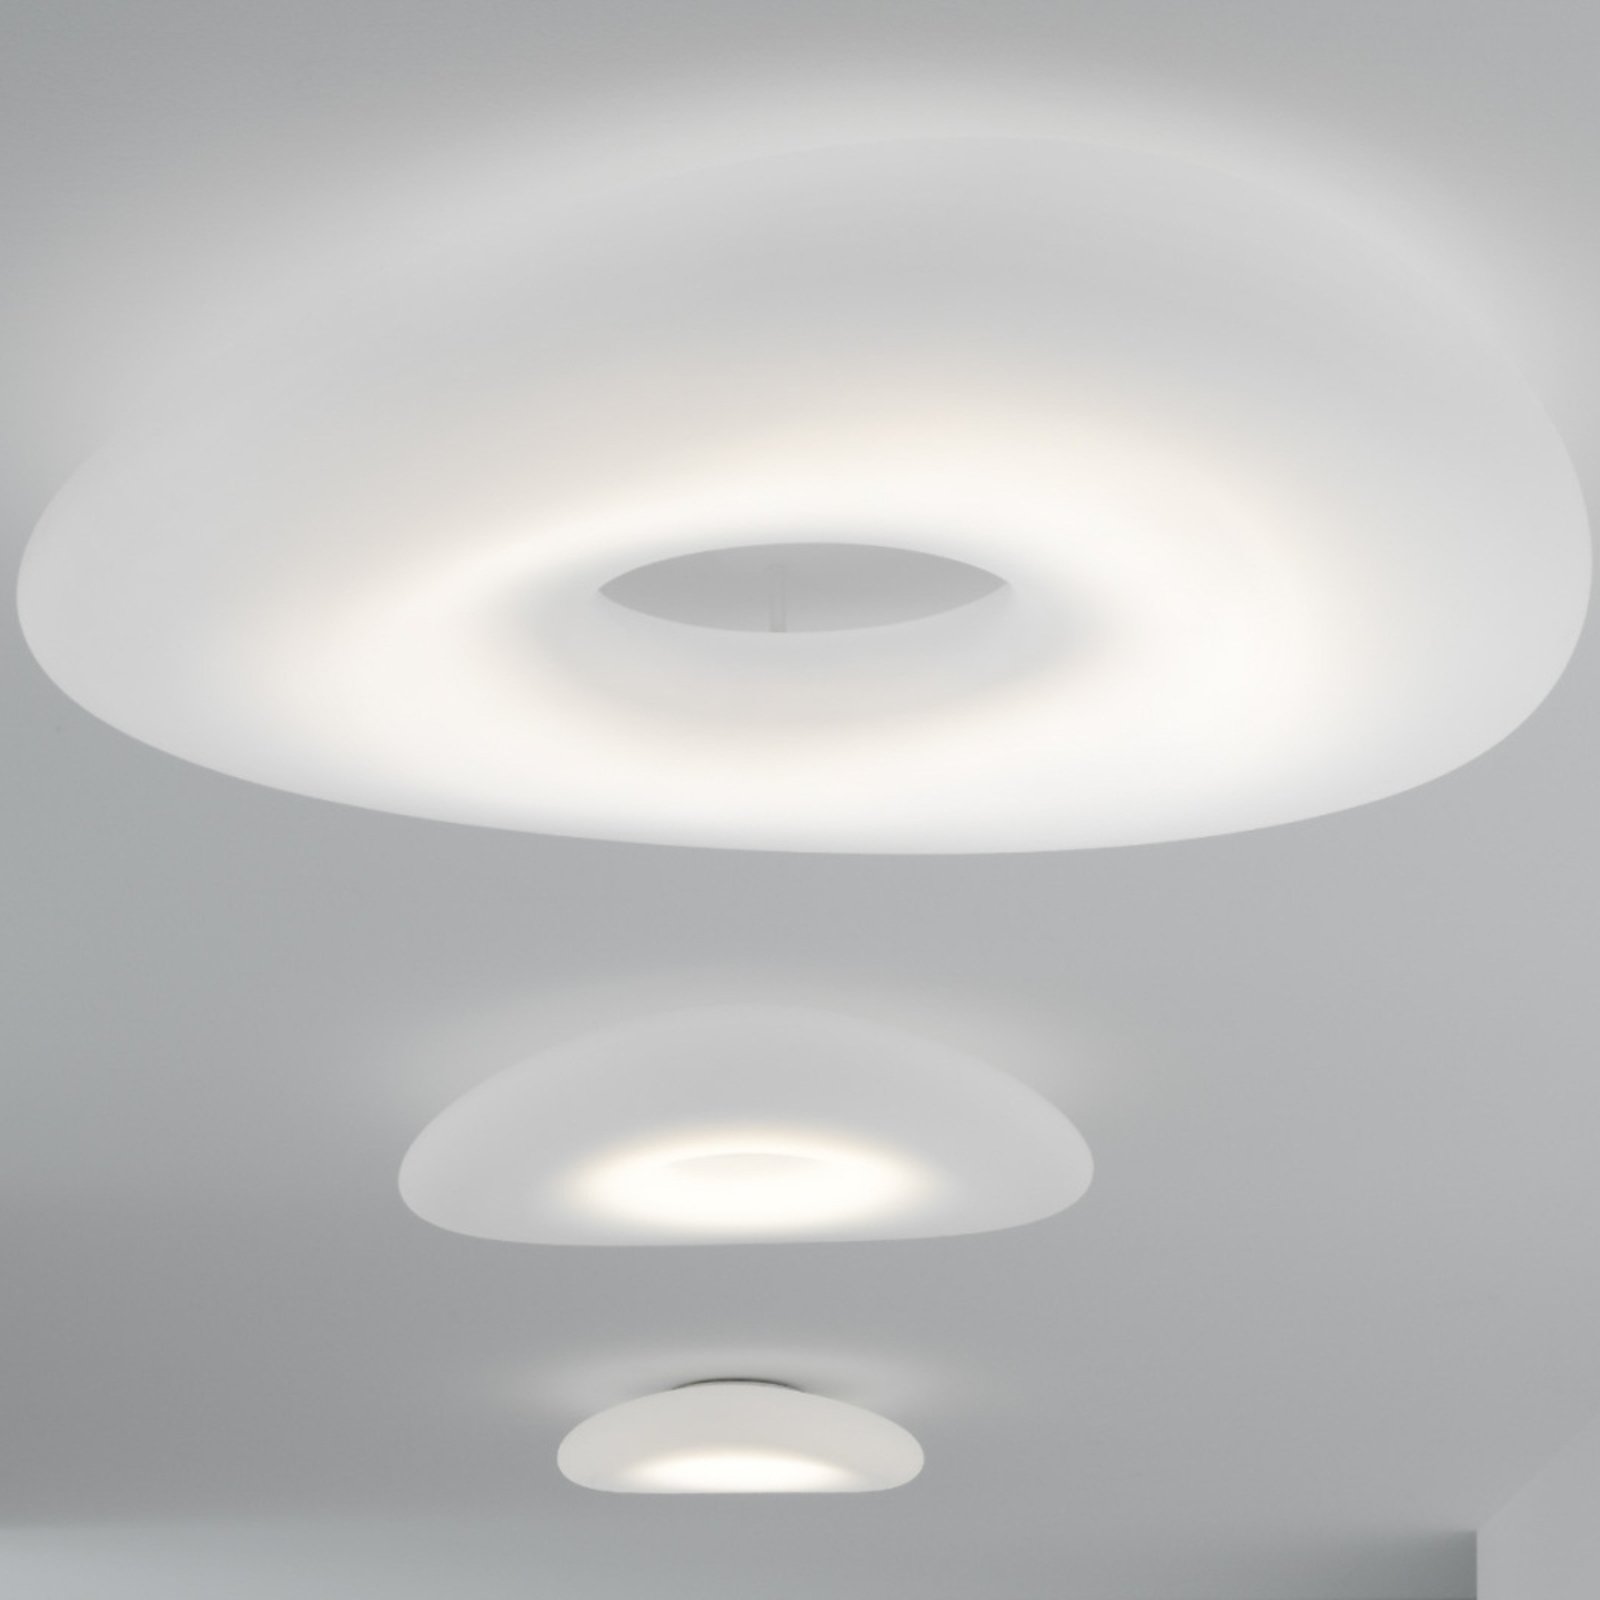 Stilnovo Mr Magoo LED ceiling light, Phase, Ø76cm